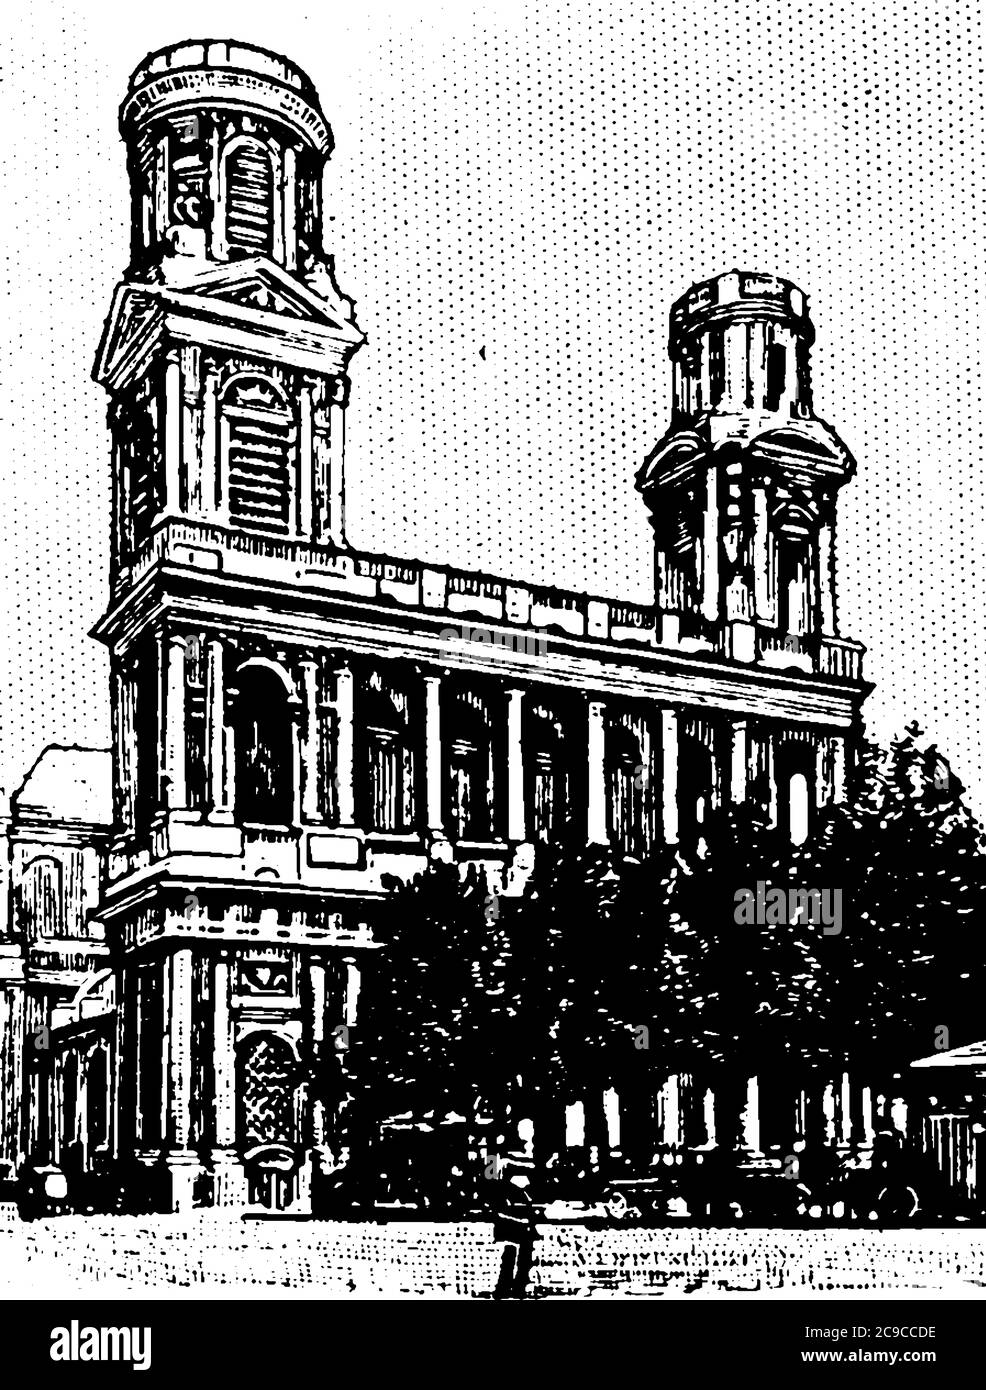 C'est une image d'une célèbre église de Paris, la célèbre église de Paris est montrée en image, ayant des arbres qui l'entourent, dessin de ligne d'époque ou gravure, vint Illustration de Vecteur